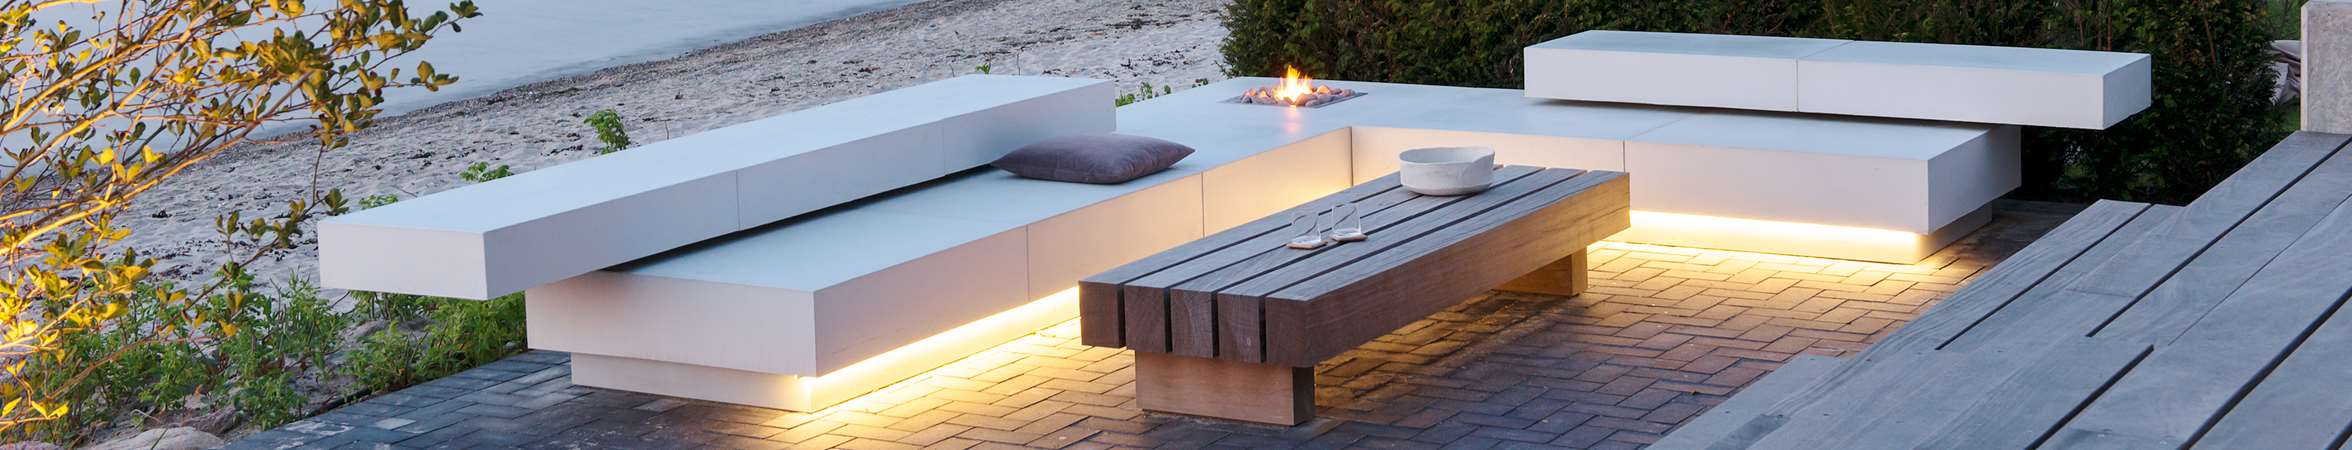 Loungezone med gasbaal designet af havearkitekt Tor Haddeland